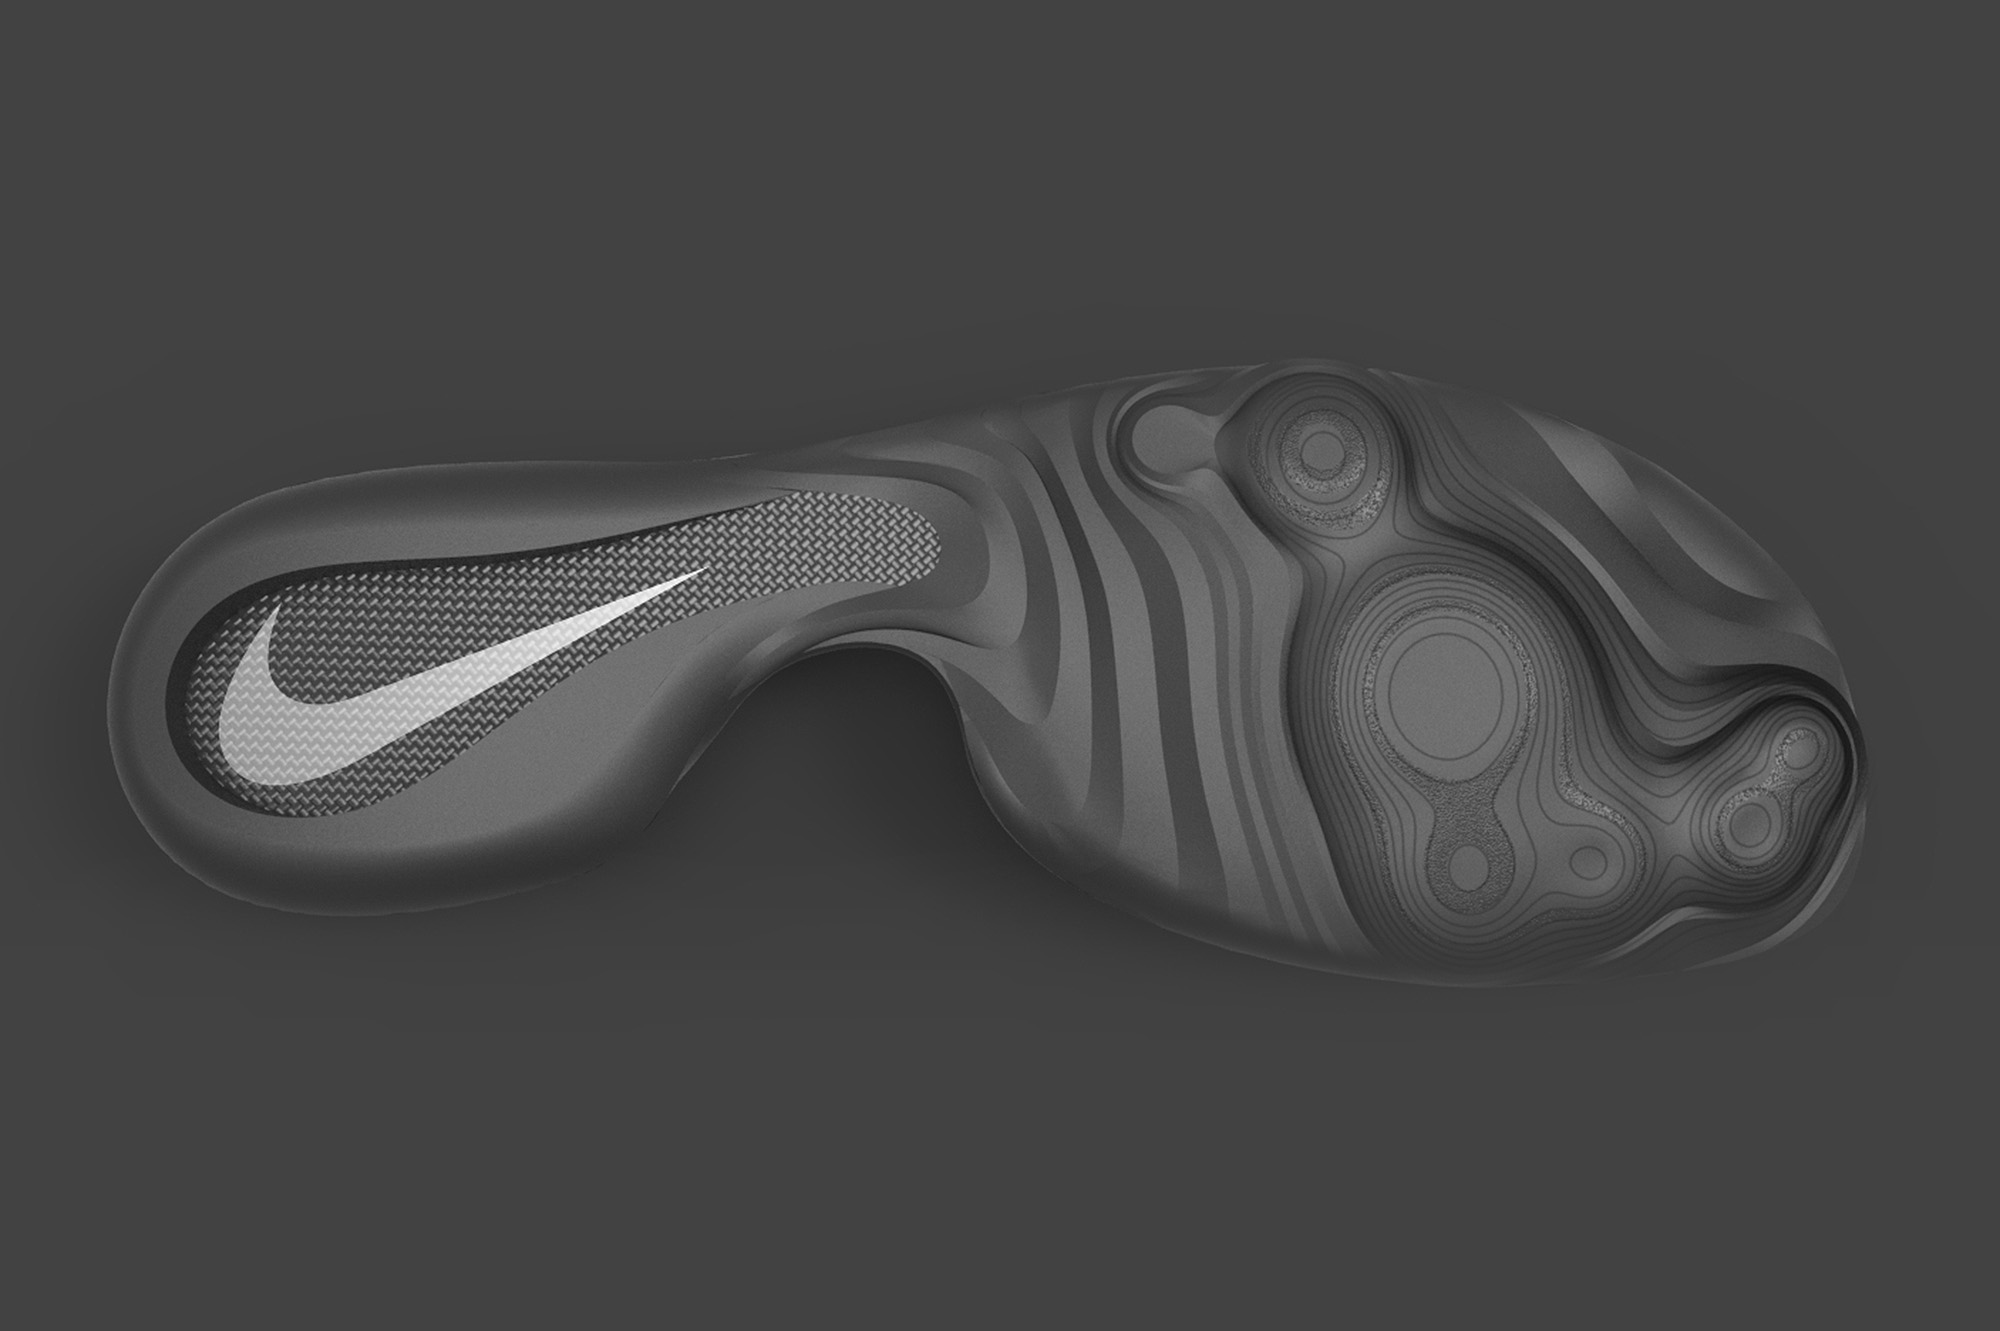 Nike Breaking 2 Concept renders by Lysandre FOLLET